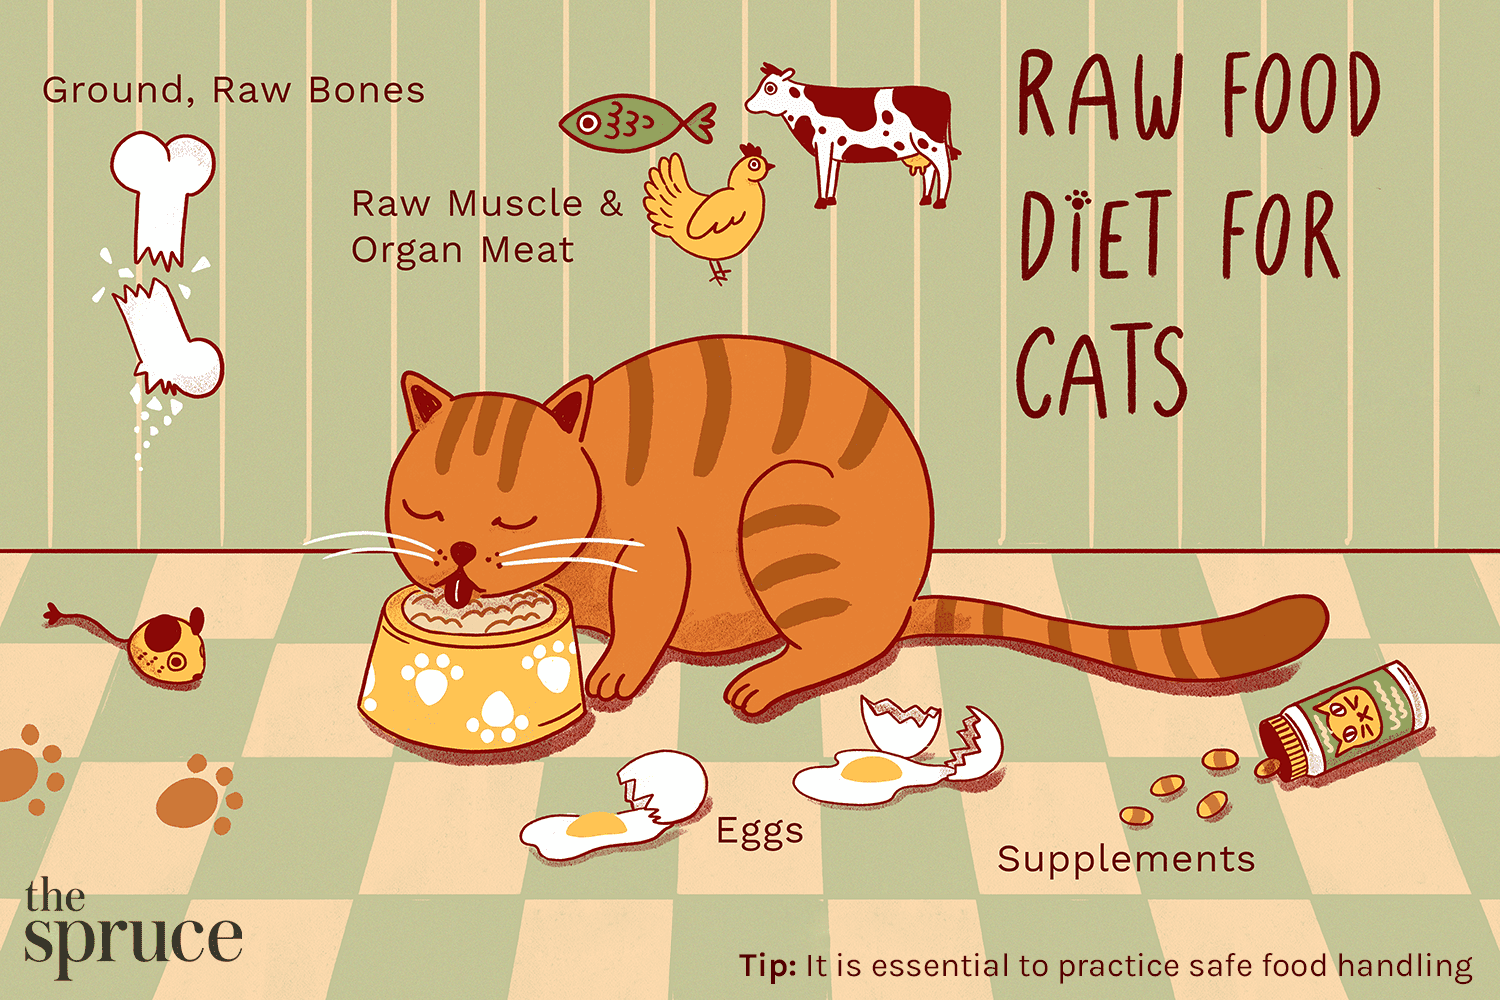 Следует ли кормить кошку сырой пищей?